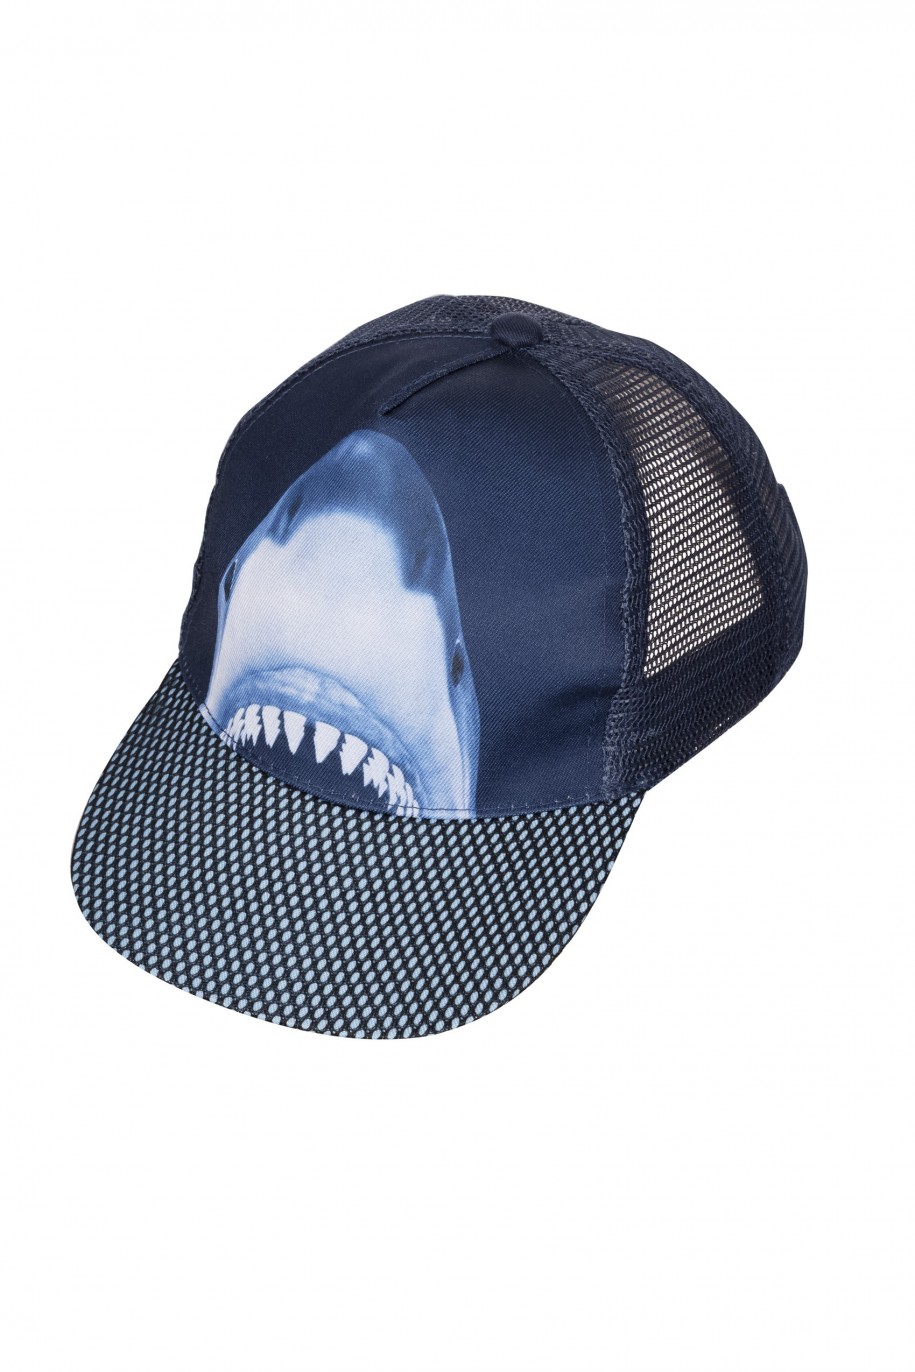 czapka z daszkiem dla chłopaka shark reporter young